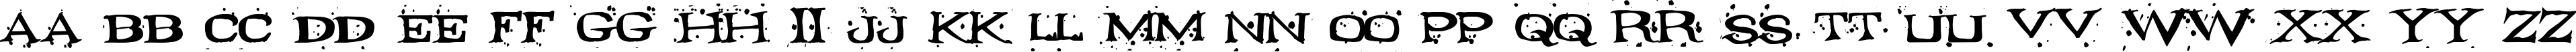 Пример написания английского алфавита шрифтом Fontocide